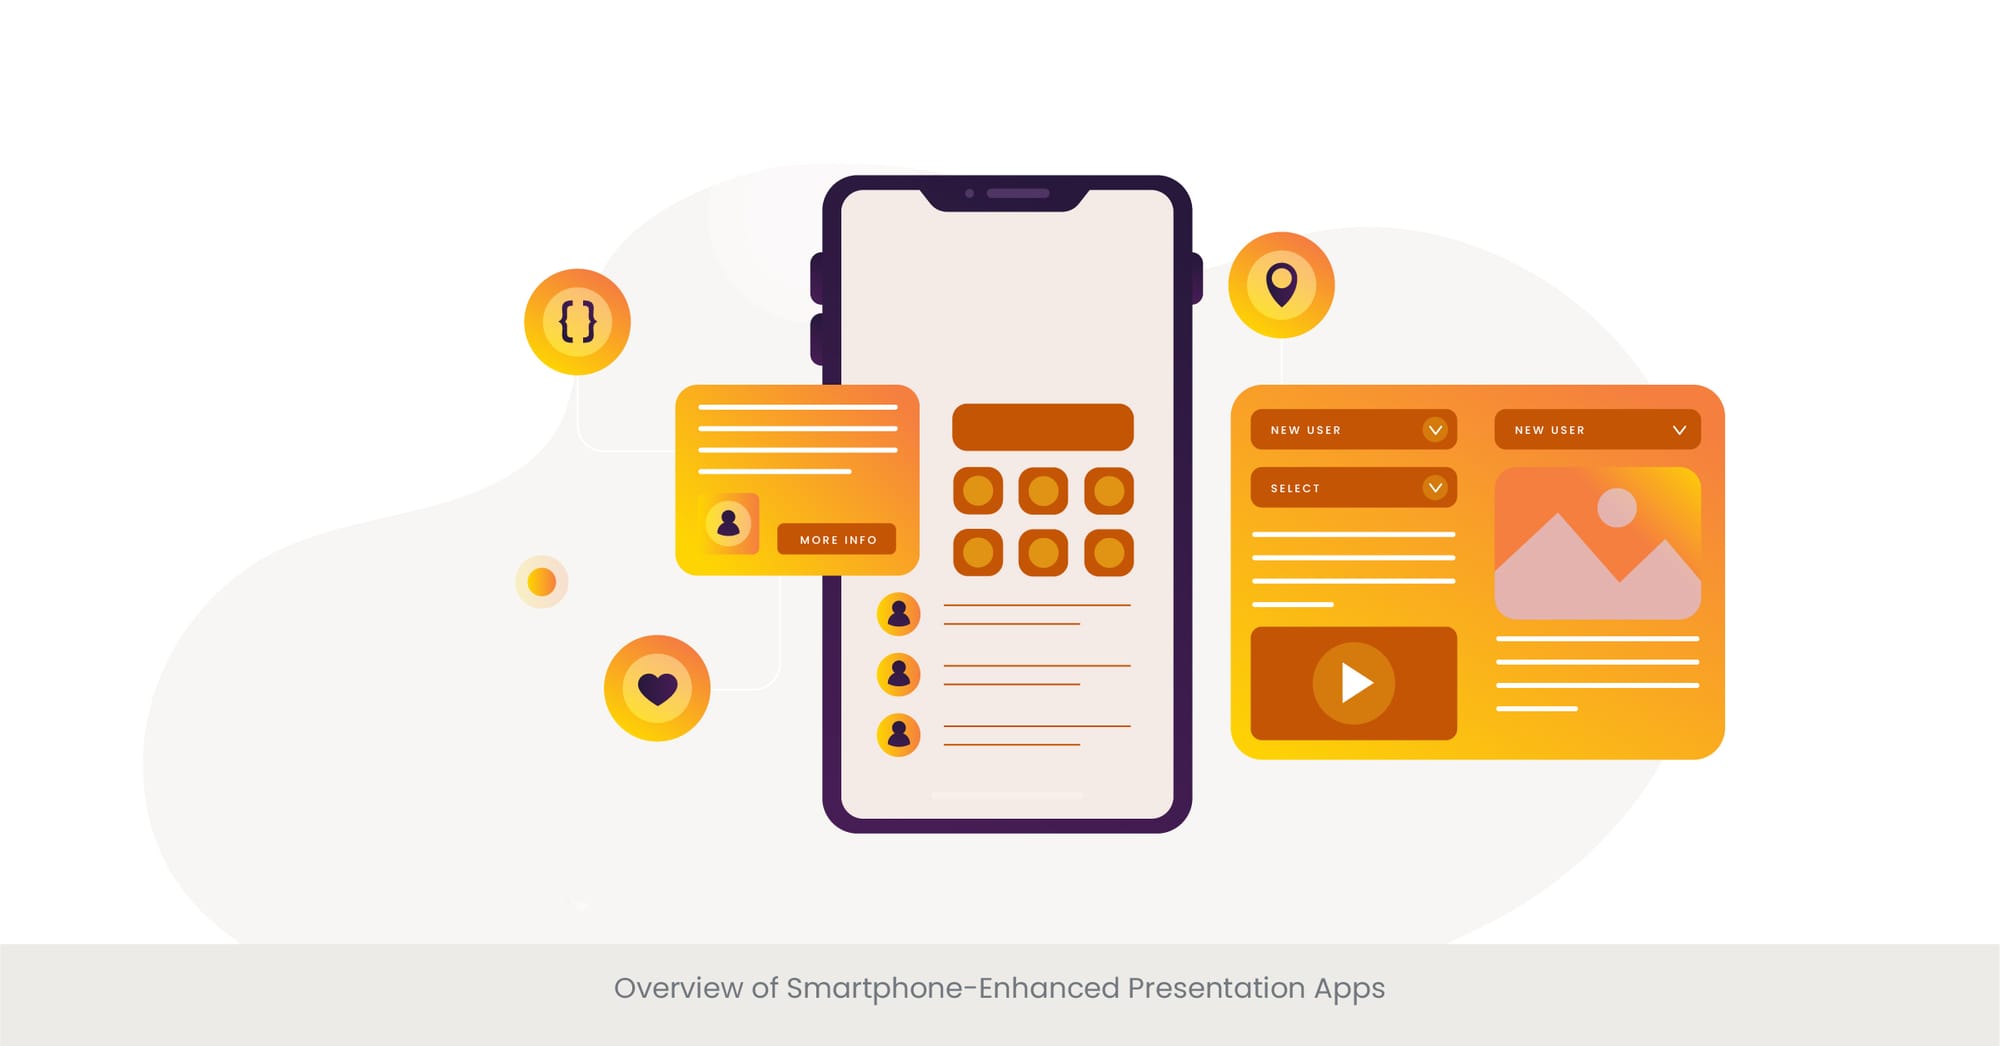 presentation skills app